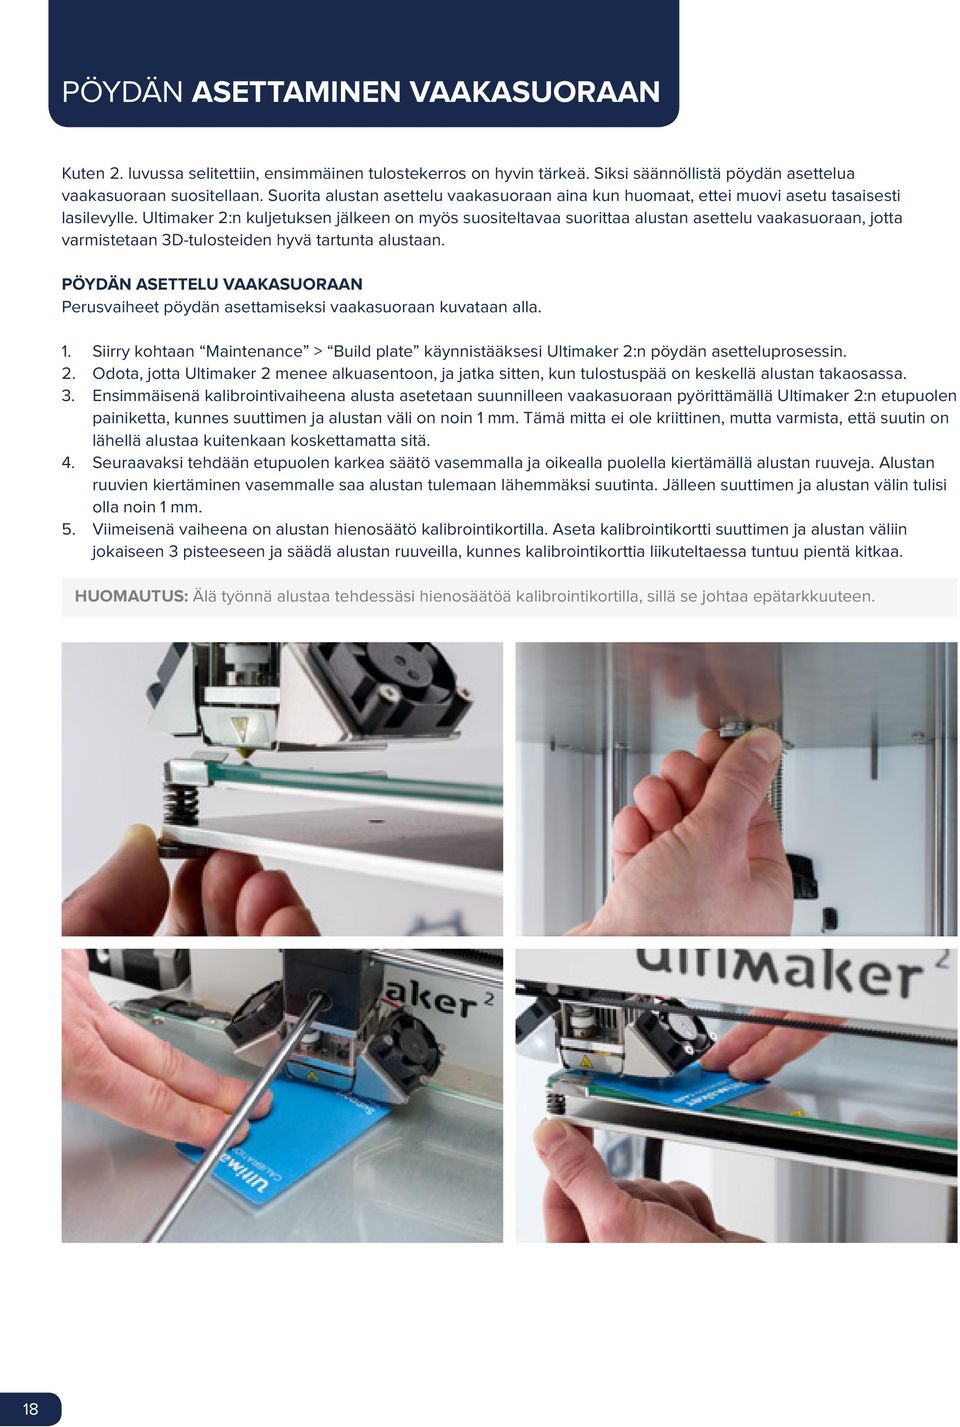 Ultimaker 2:n kuljetuksen jälkeen on myös suositeltavaa suorittaa alustan asettelu vaakasuoraan, jotta varmistetaan 3D-tulosteiden hyvä tartunta alustaan.